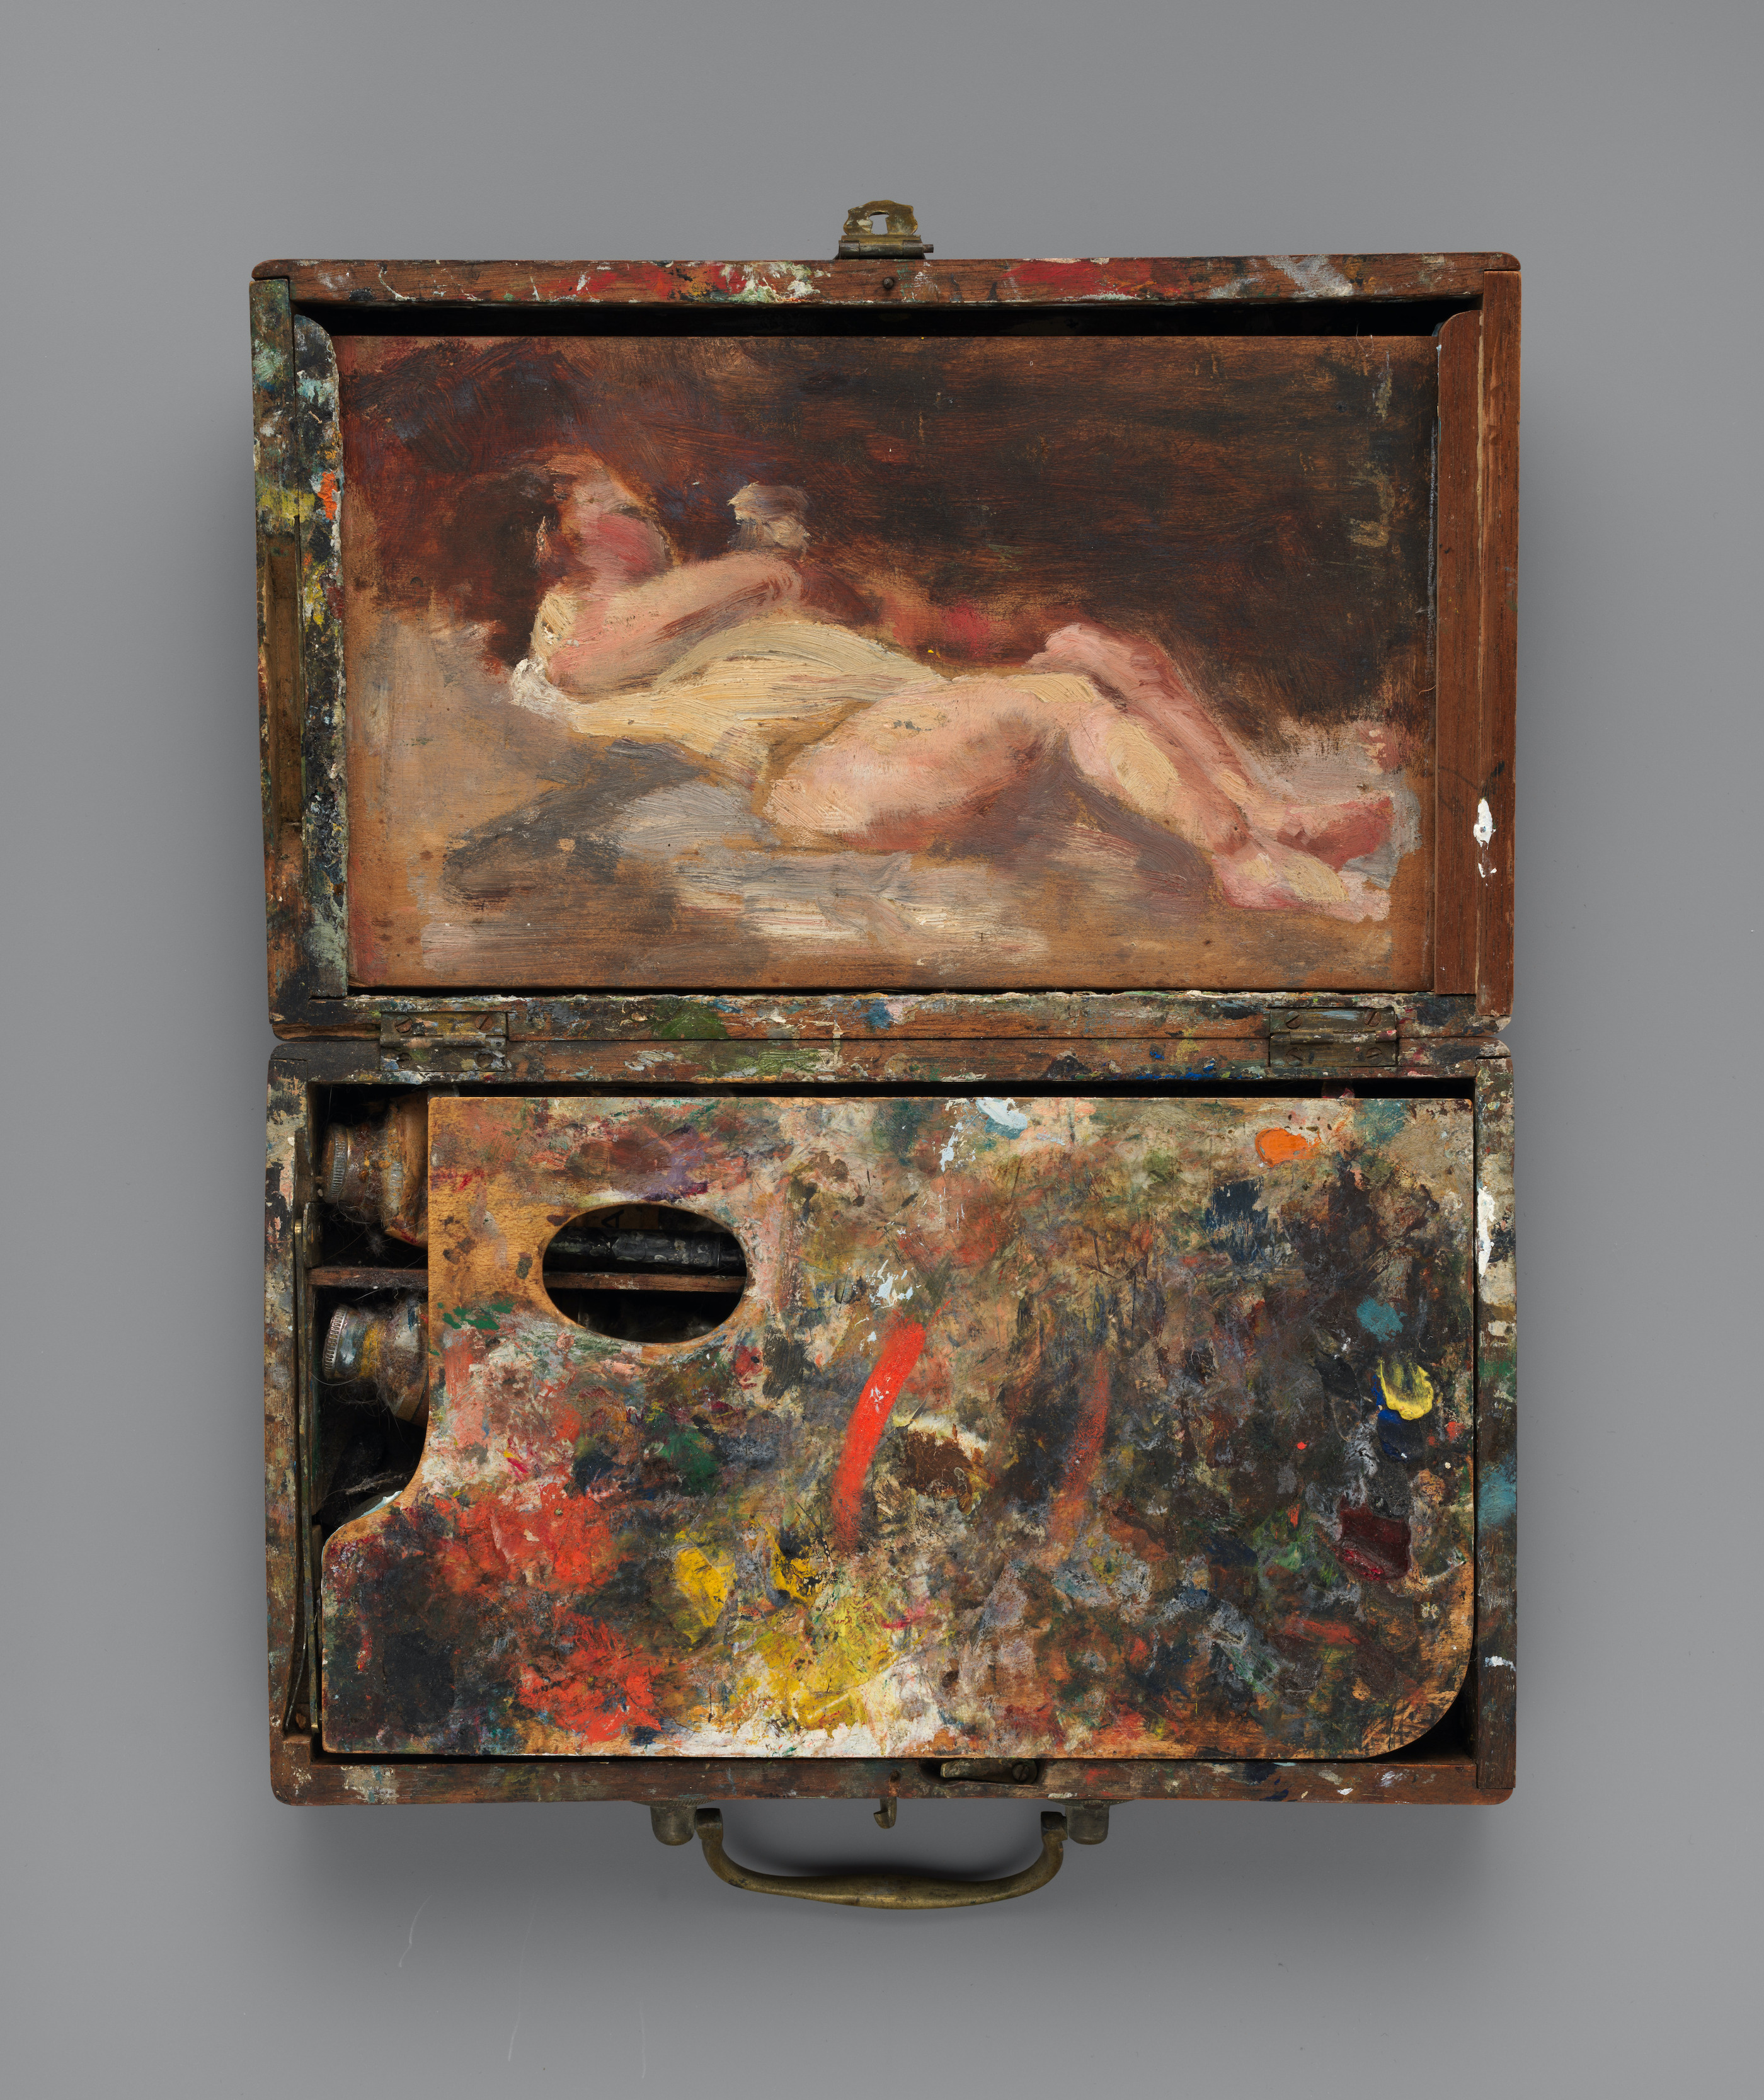 Malířský kufřík se skicou aktu na víku by Helena de Kay - 1871 - 5,1 × 23,5 × 14 cm 